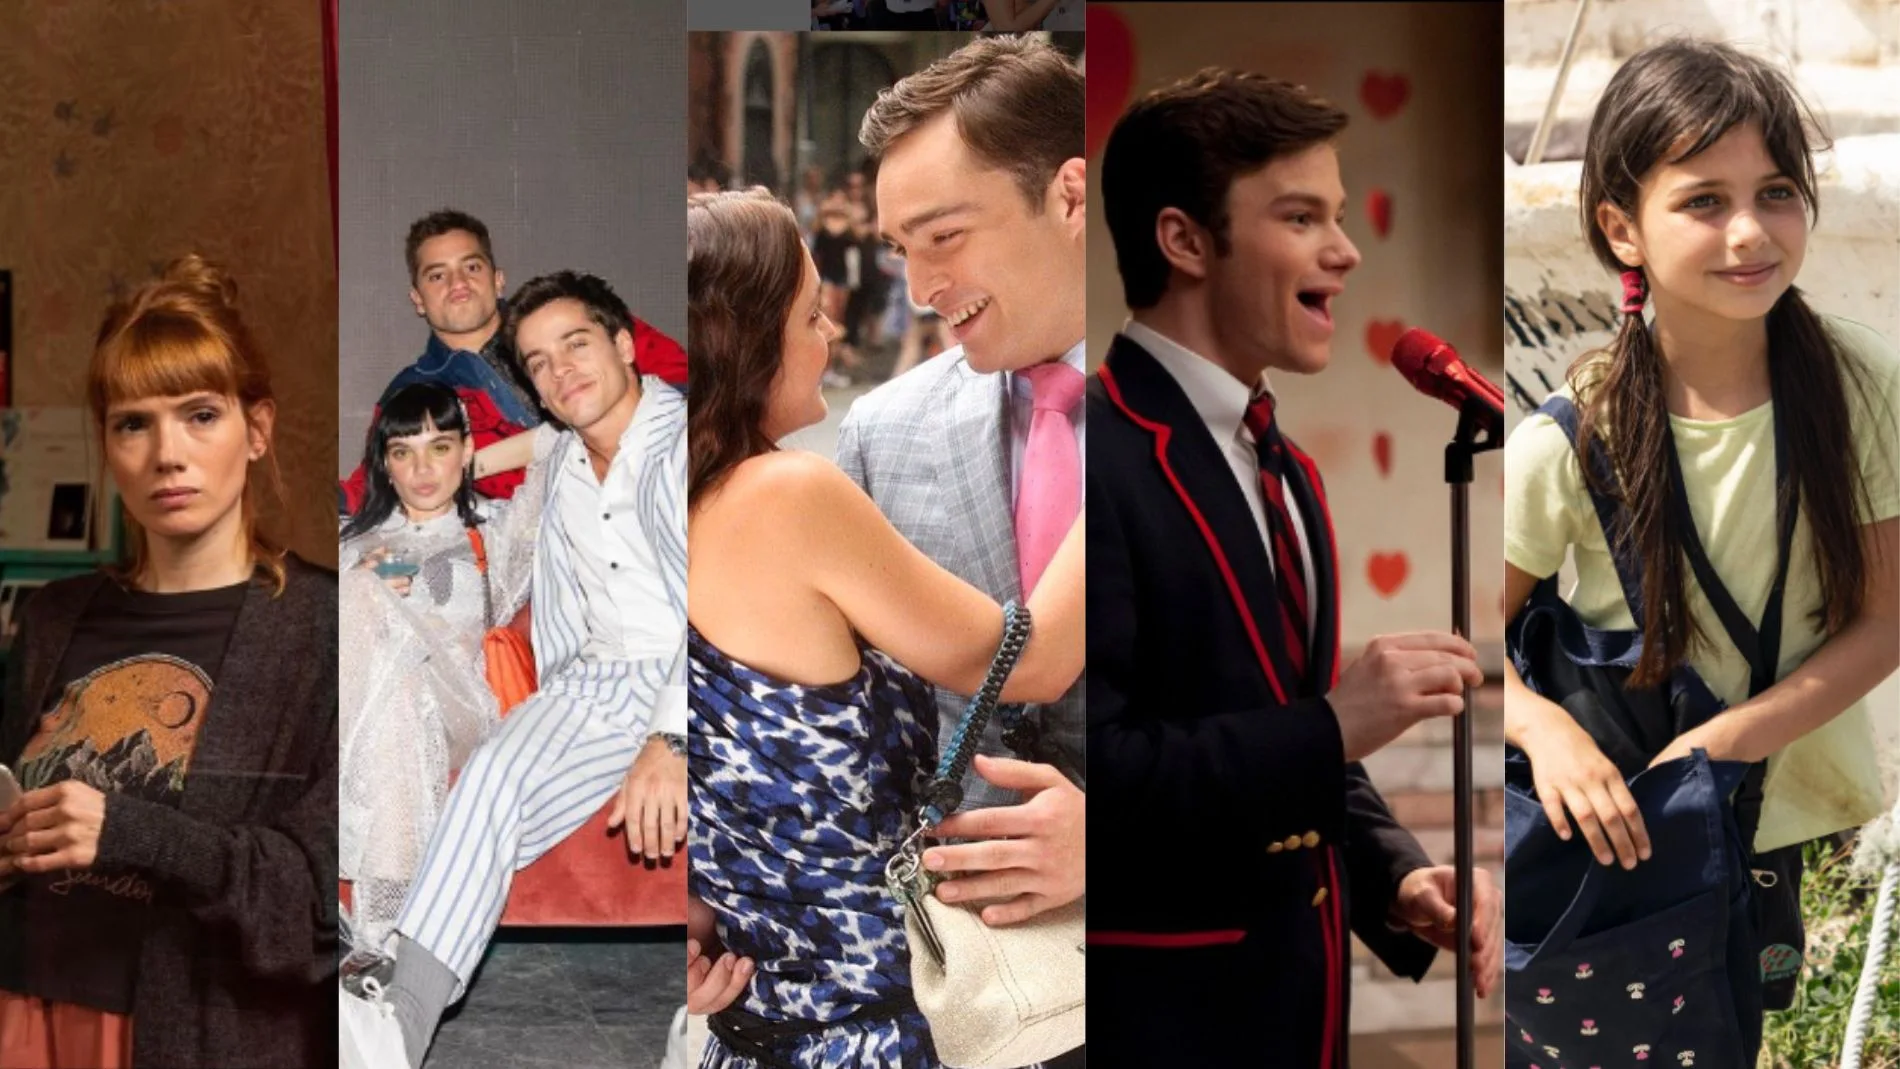 Novedades como 'Valeria', 'Heridas' o 'Élite' o series más antiguas como 'Glee' y 'Gossip Girl'